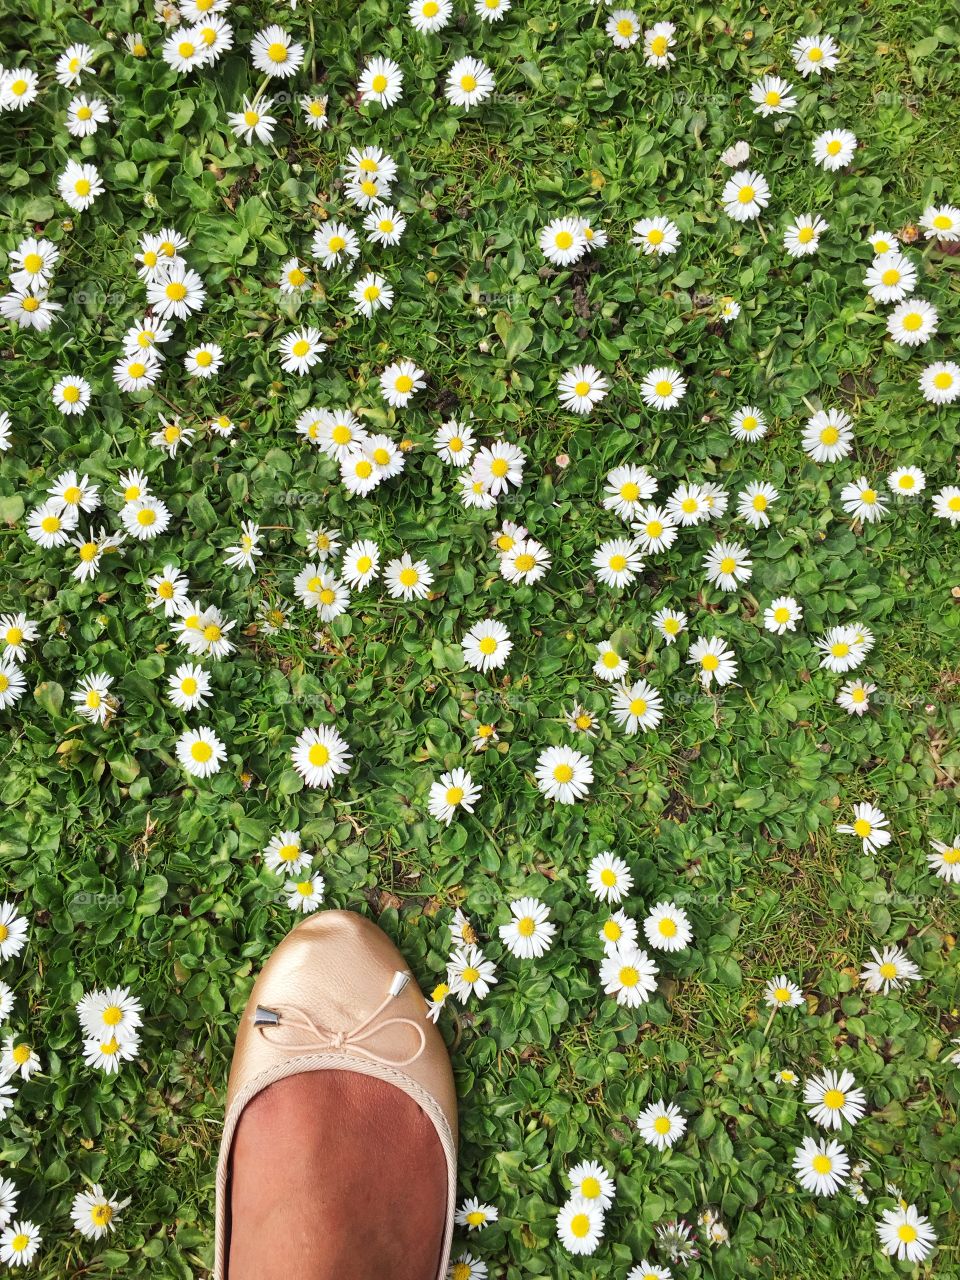 Foot in daisy flowers field. Foot in daisy flowers field